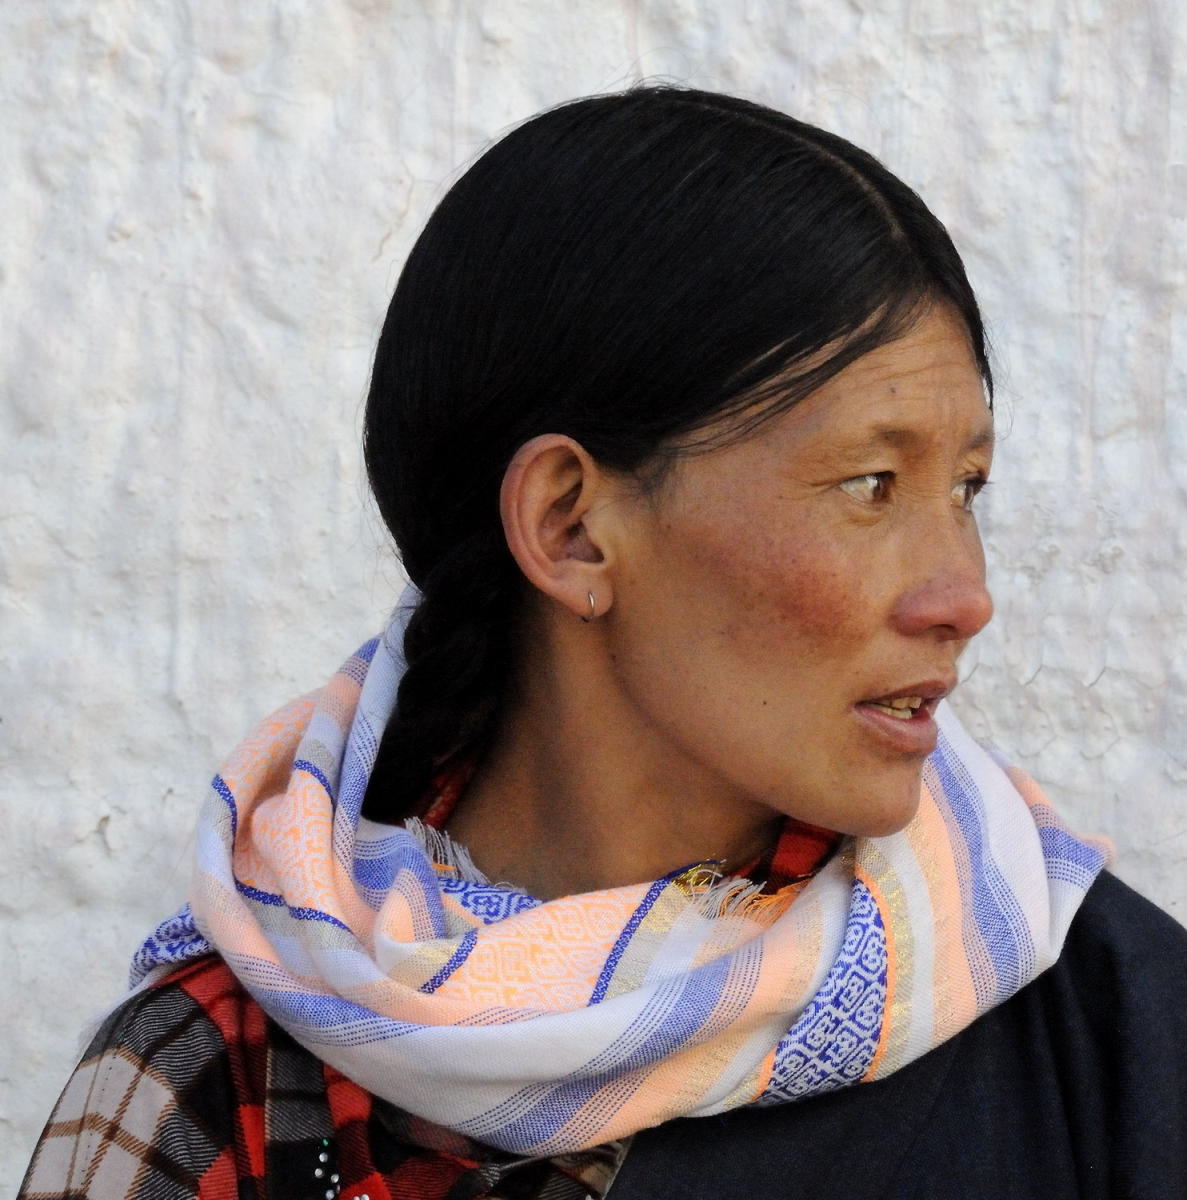 DSC_0090A1 - Tibetan Woman